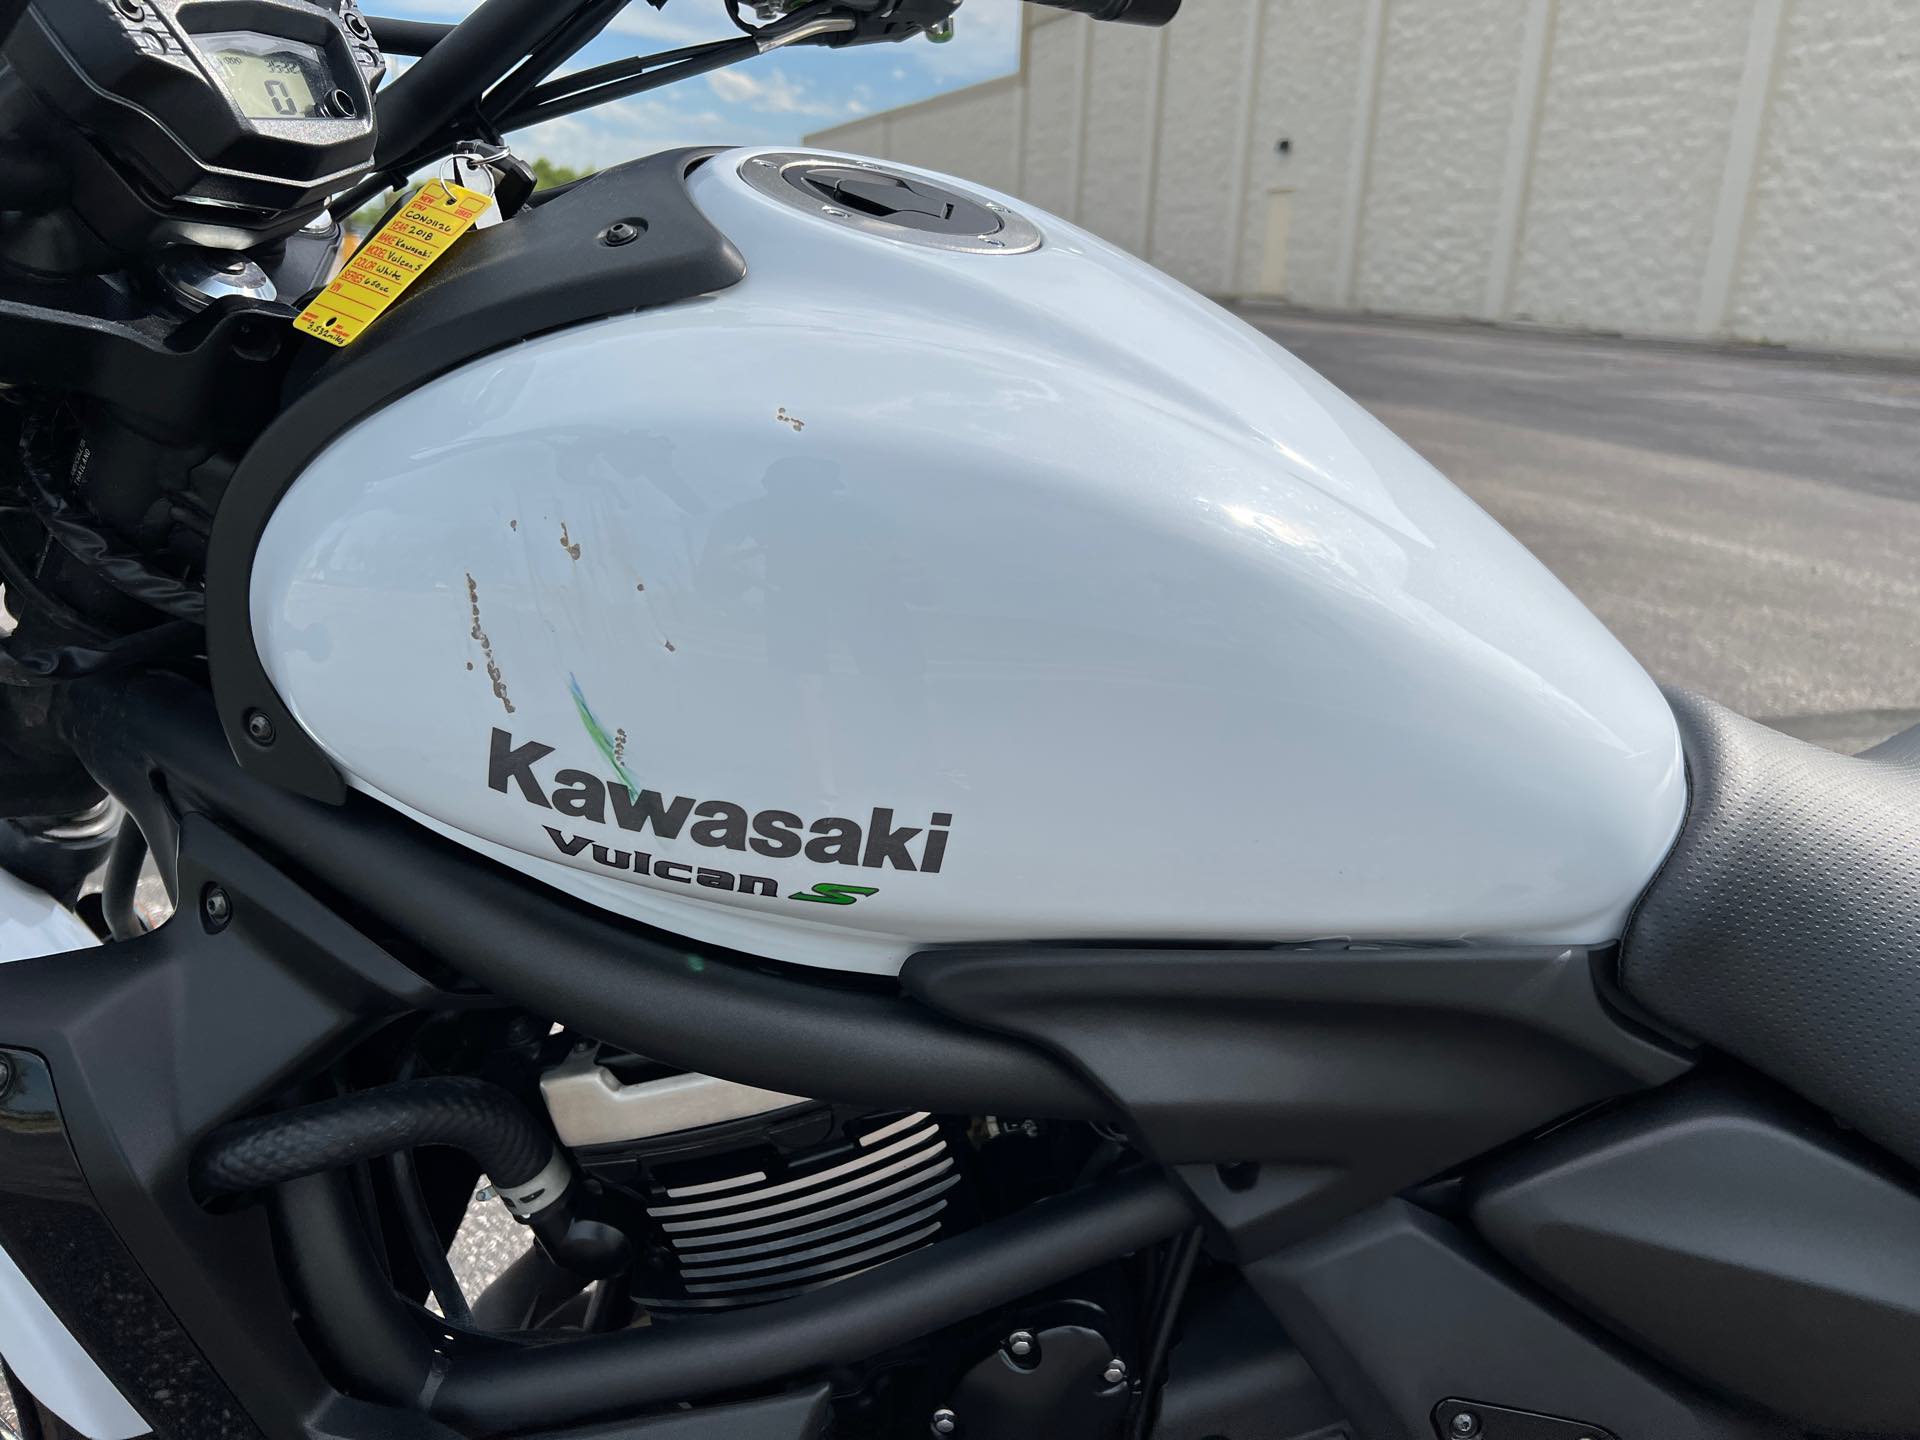 2018 Kawasaki Vulcan S Base at Mount Rushmore Motorsports